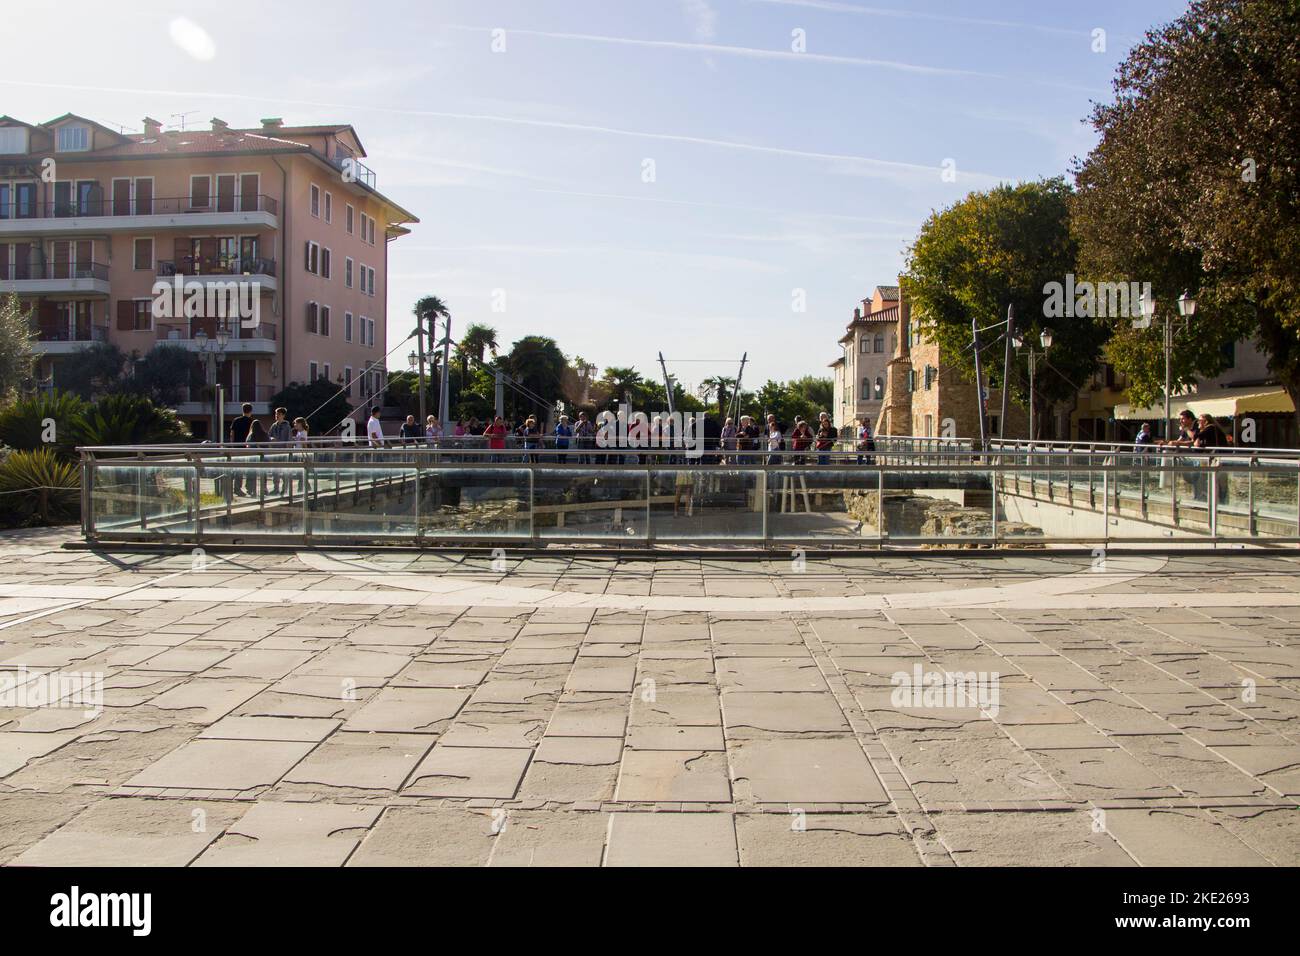 Piazza della Corte renamed to Piazza Vittoria town square,  Remains of Floor of the Basilica della Corte behind banisters Stock Photo